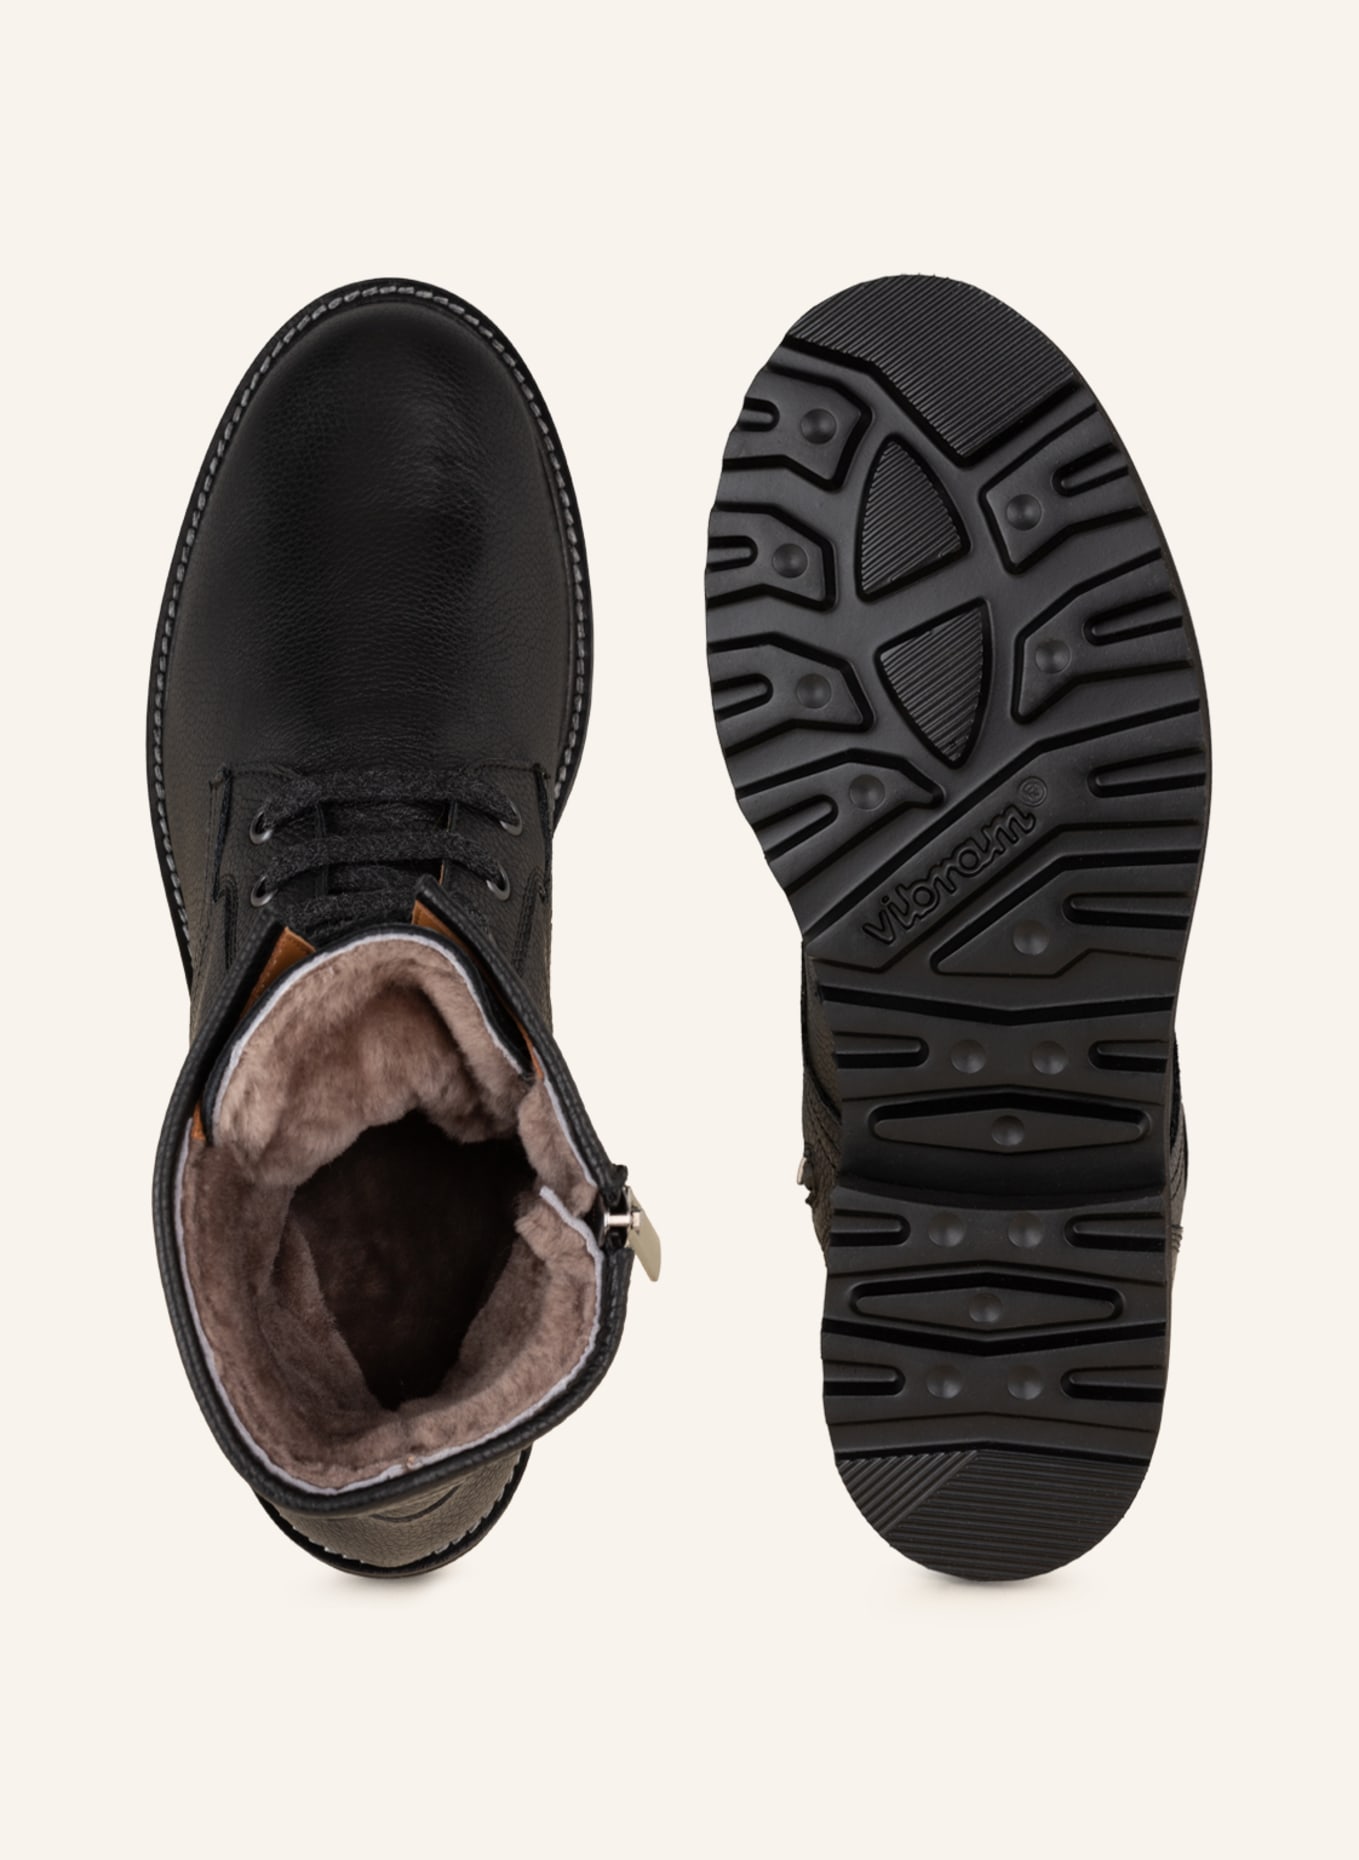 VIAMERCANTI Lace-up boots, Color: BLACK (Image 6)